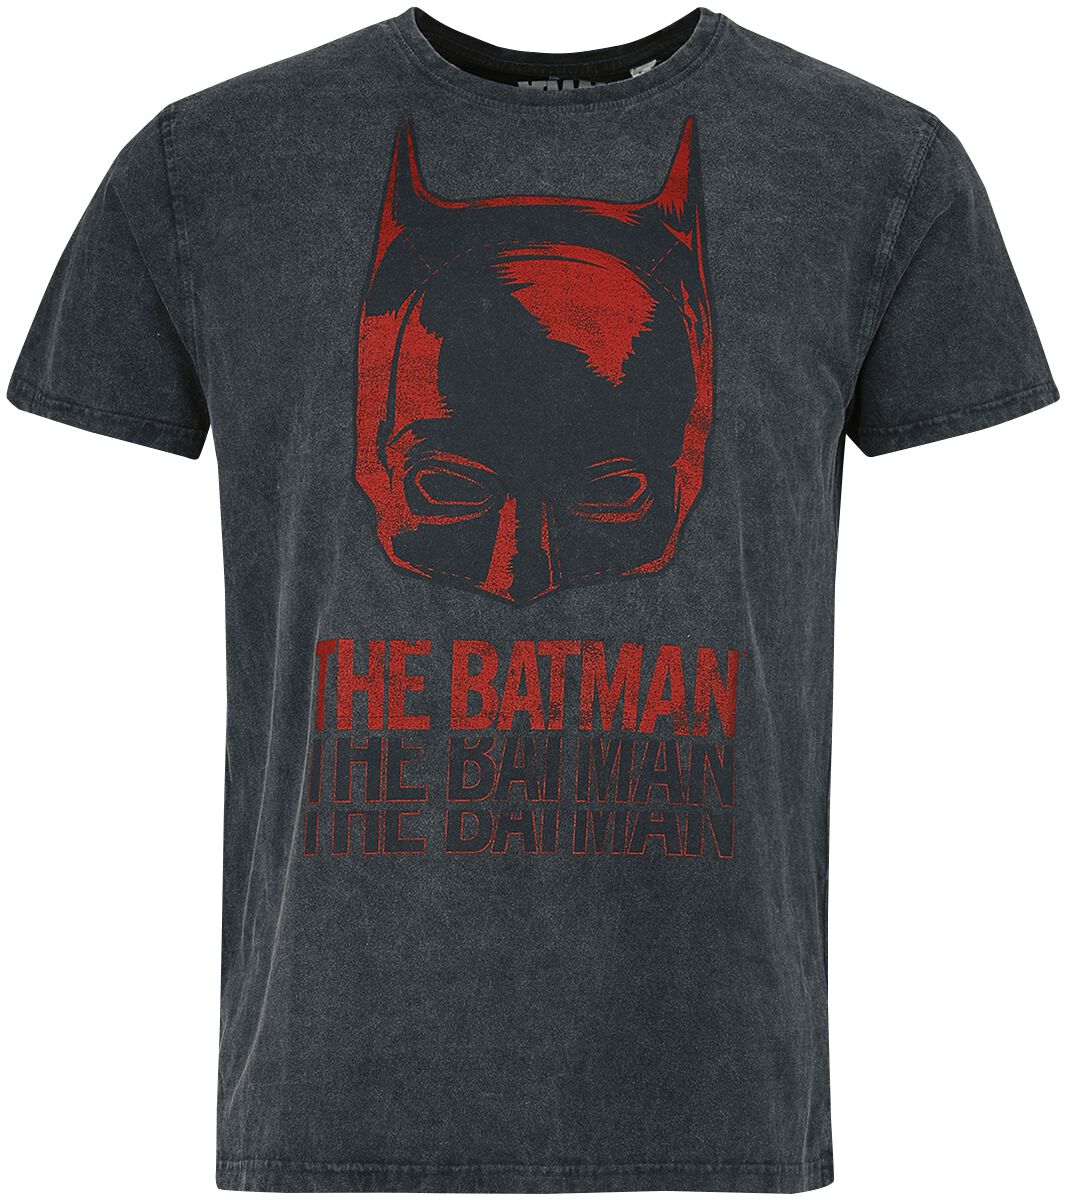 Batman - DC Comics T-Shirt - The Batman - Mask - S bis XXL - für Männer - Größe XL - schwarz  - Lizenzierter Fanartikel